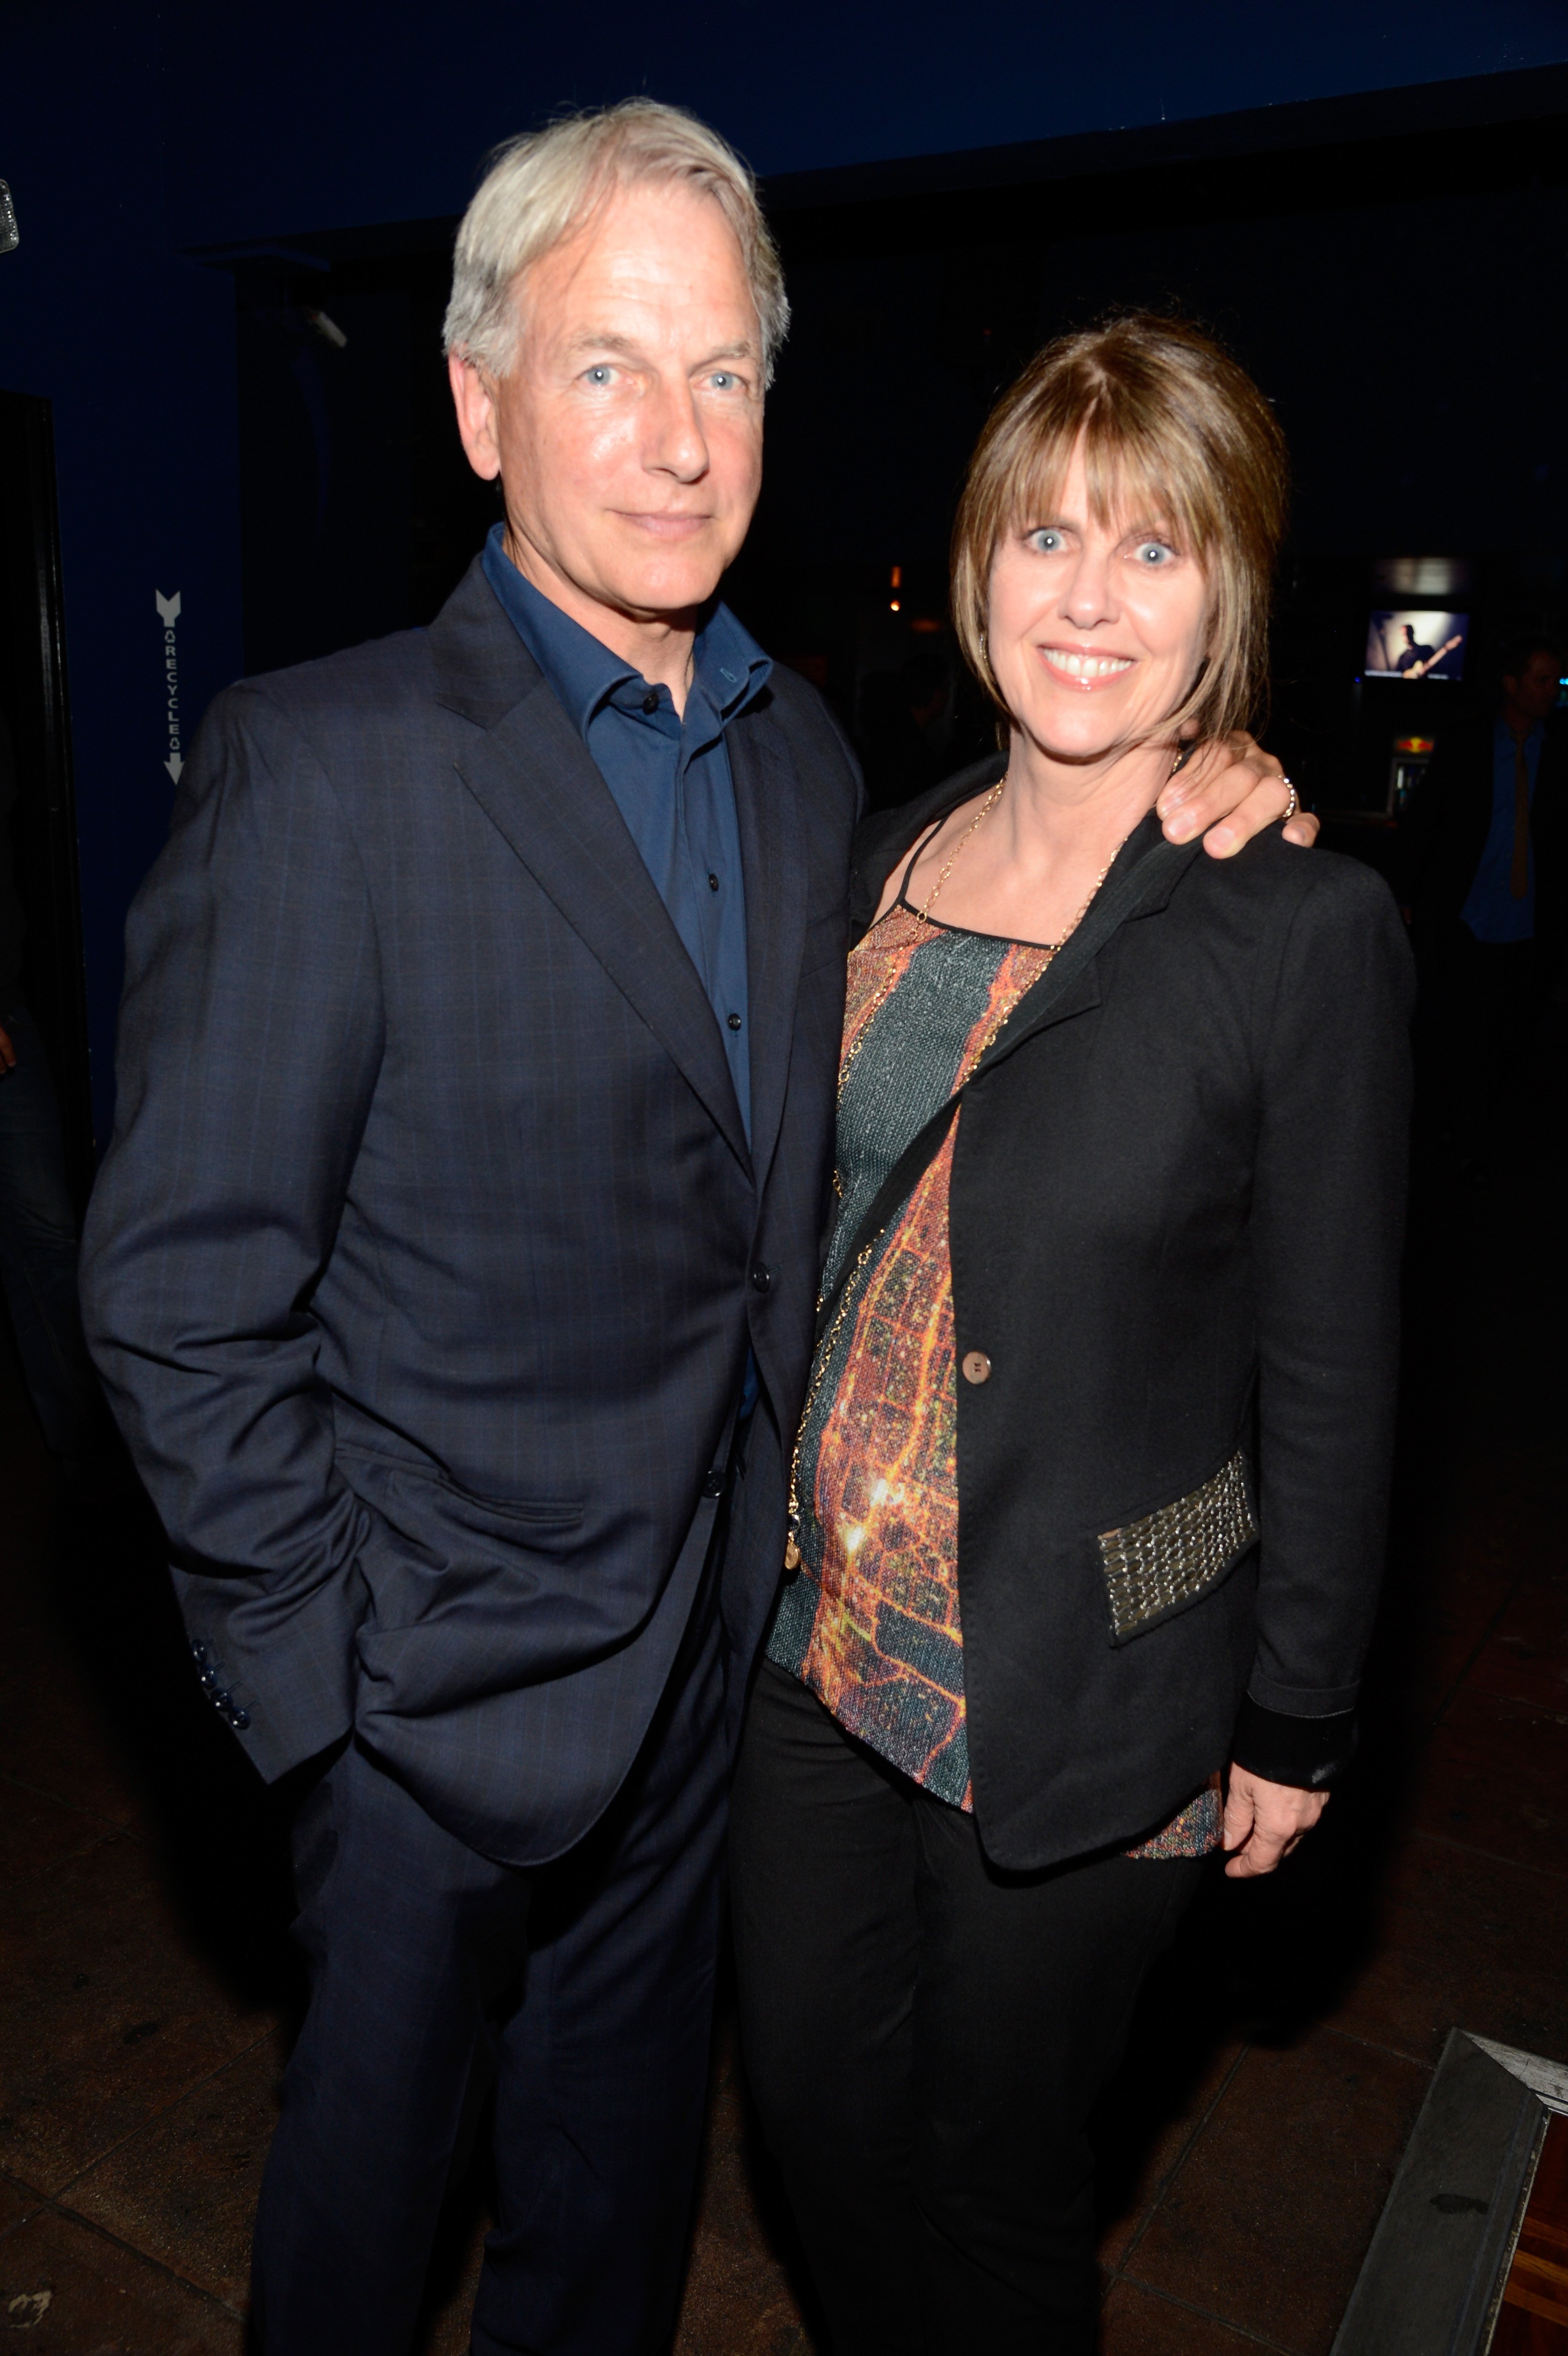 El actor Mark Harmon y Pam Dawber, durante la presentación de los Rolling Stones en Echoplex el 27 de abril de 2013 en Los Ángeles, California. | Fuente: Getty Images